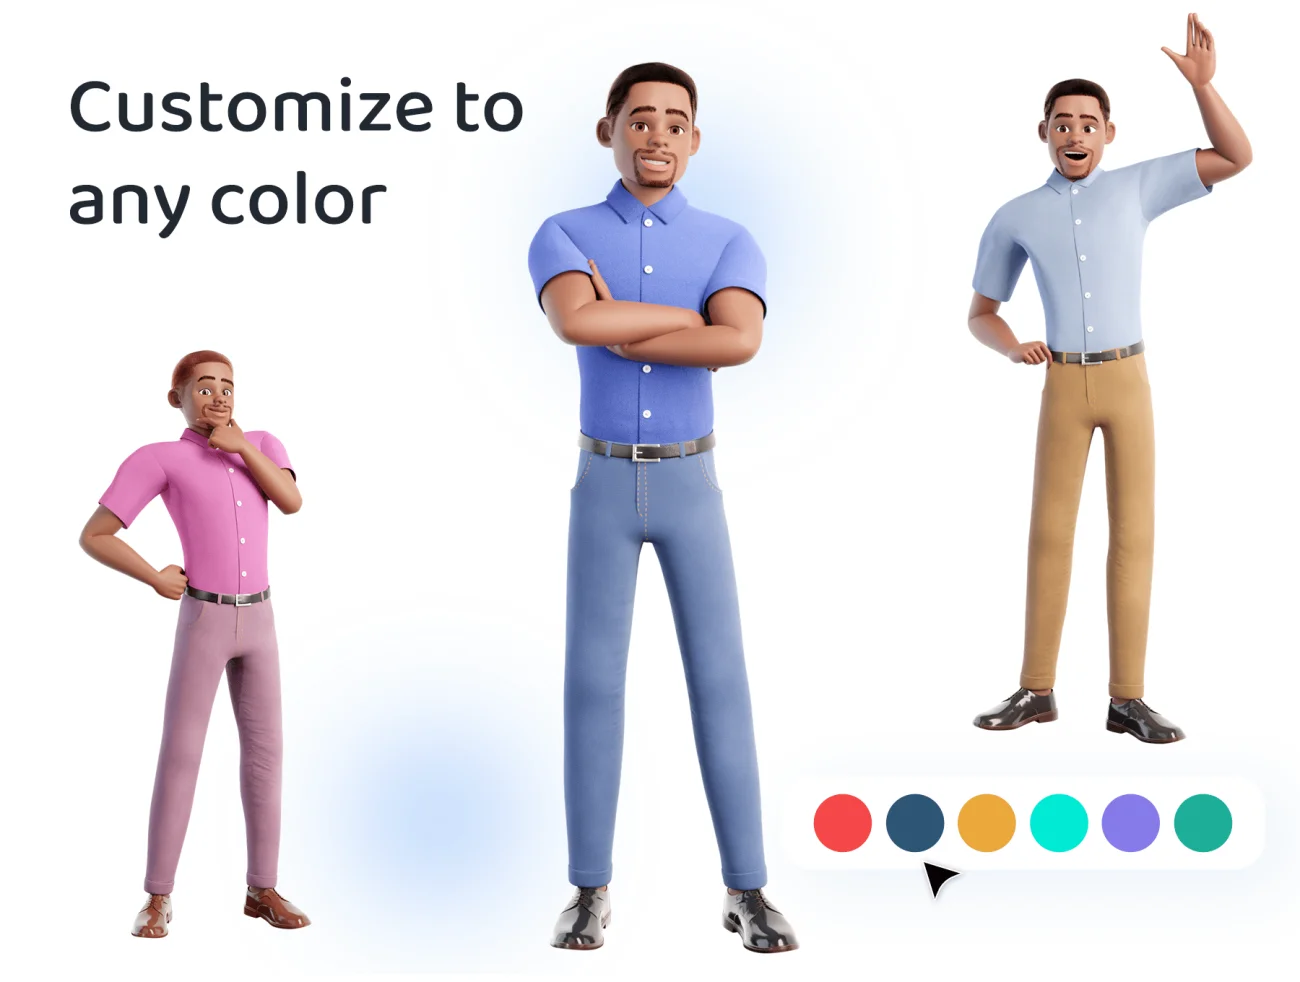 20款男性形象3D动画插图库 3D Male Character Pose Library Pack插图3